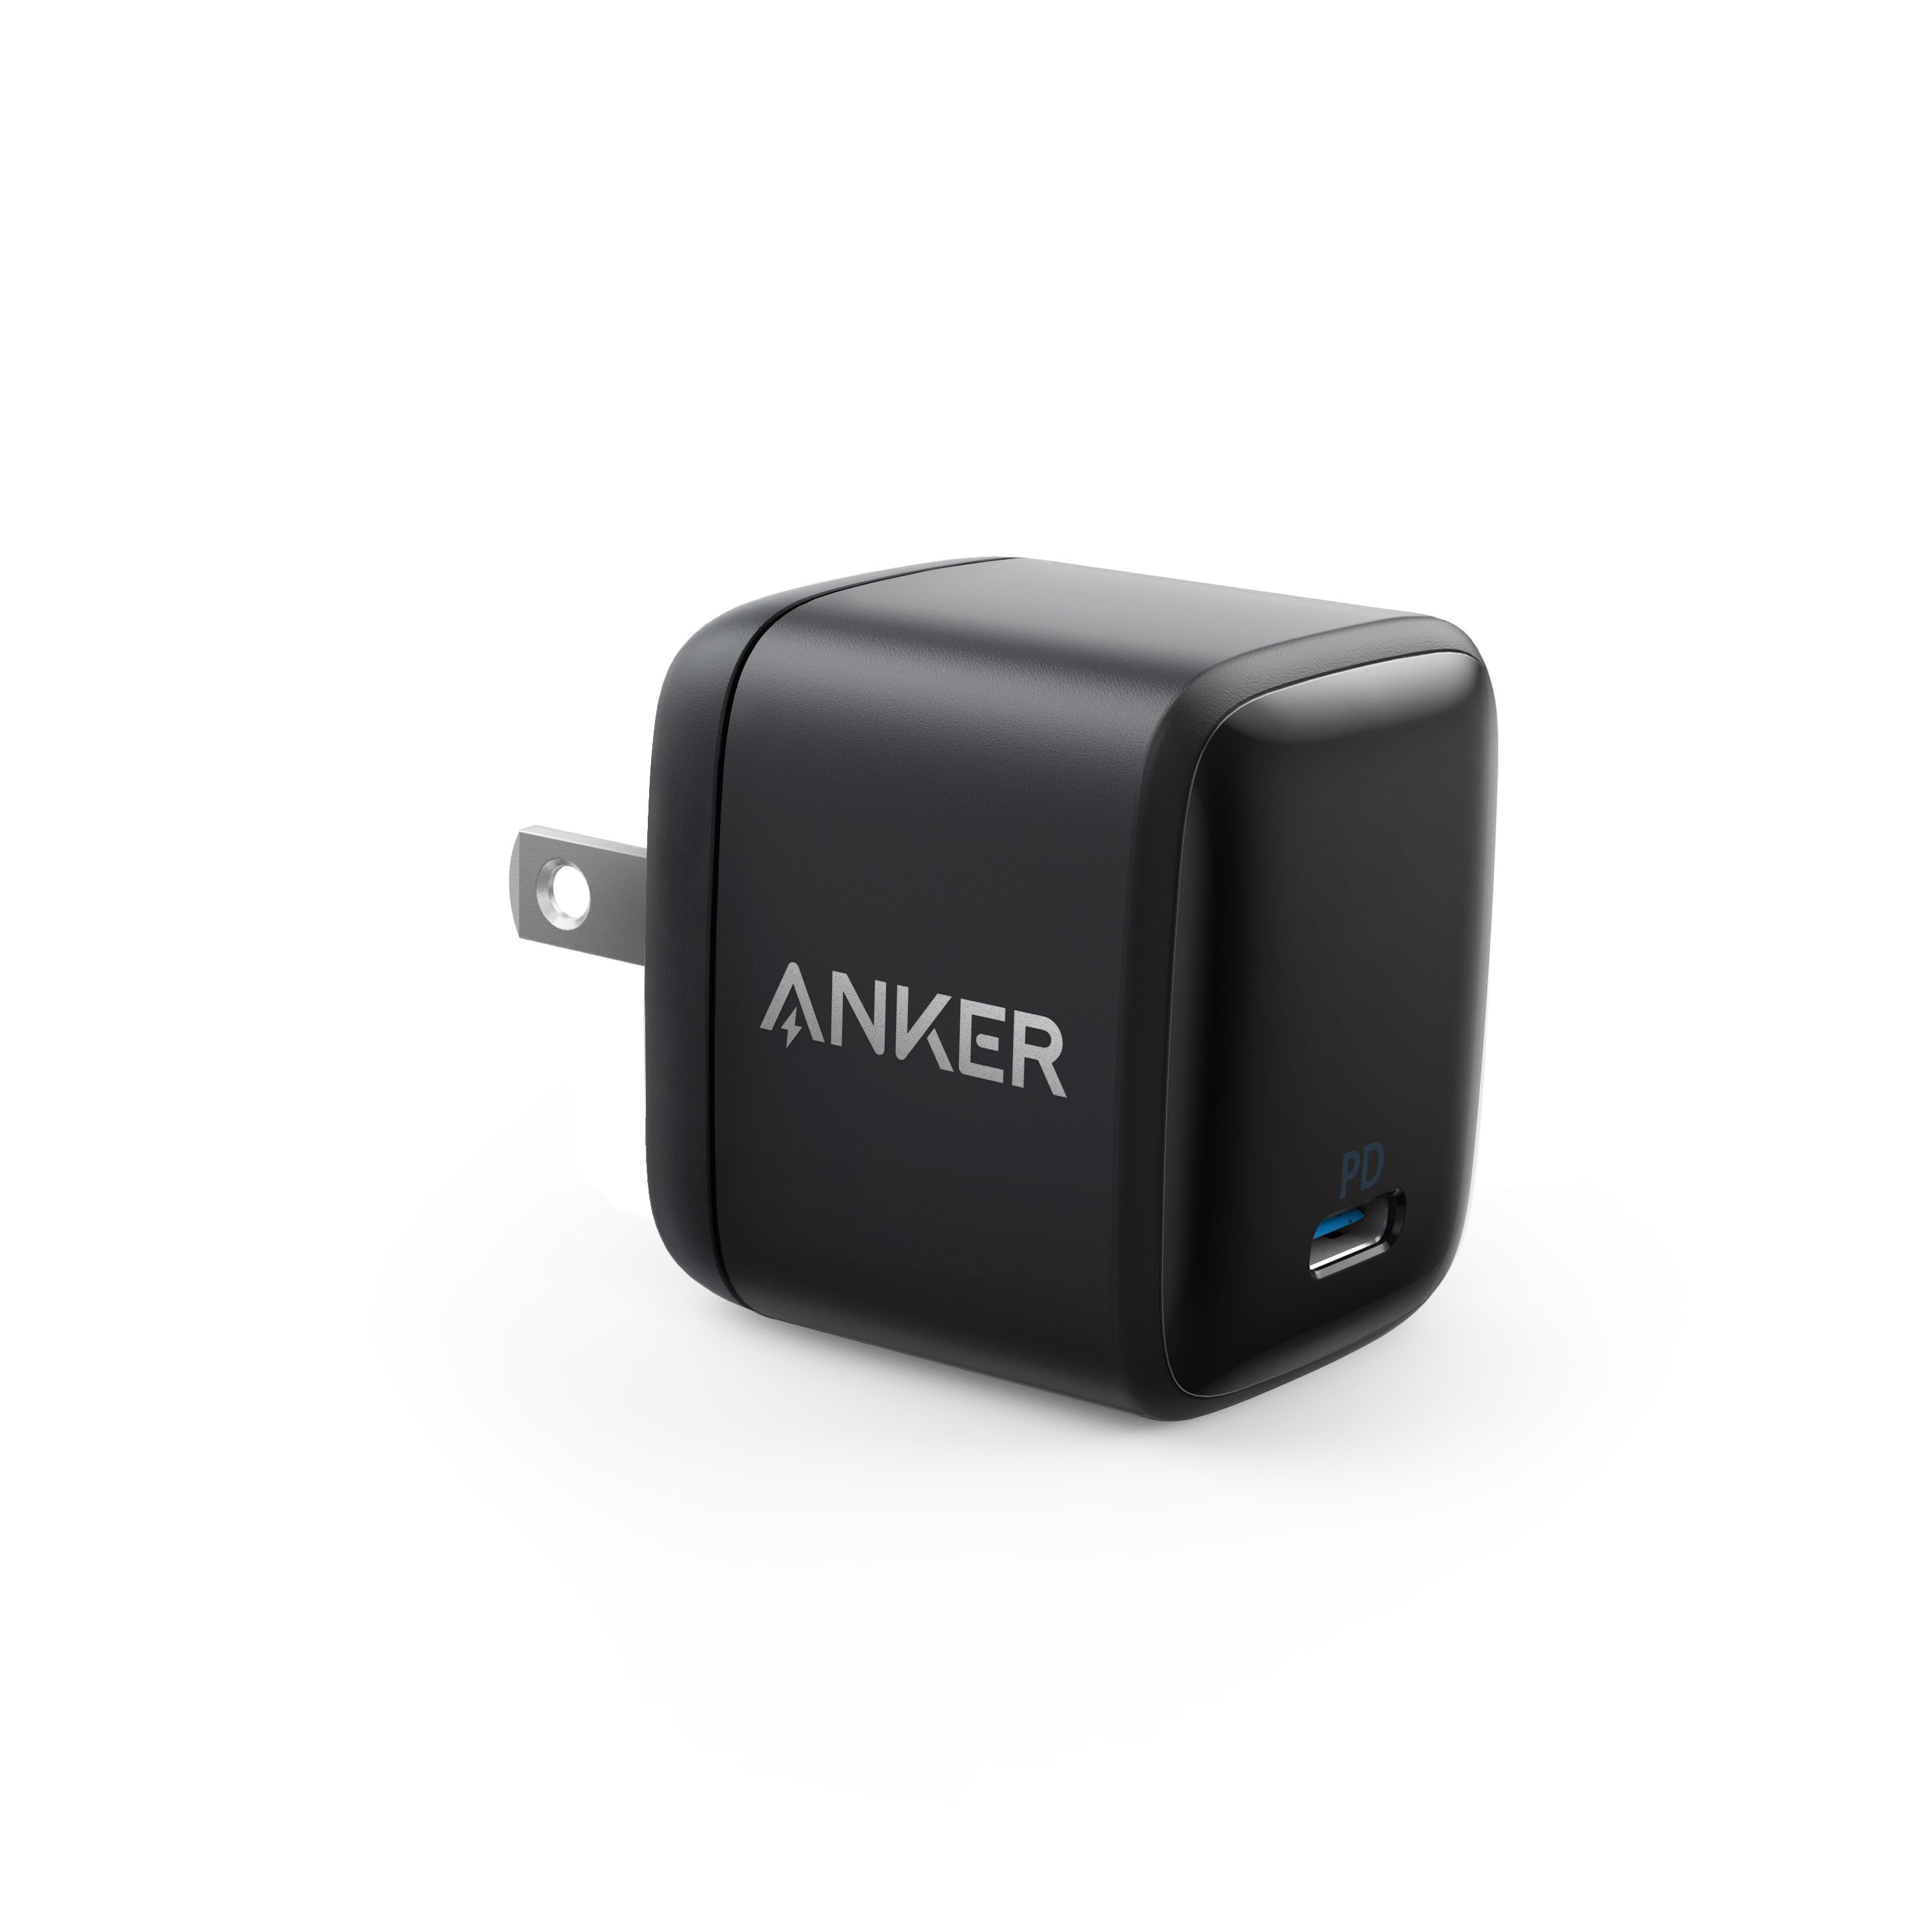 Bon plan sur ce chargeur Anker compatible avec le rechargement rapide